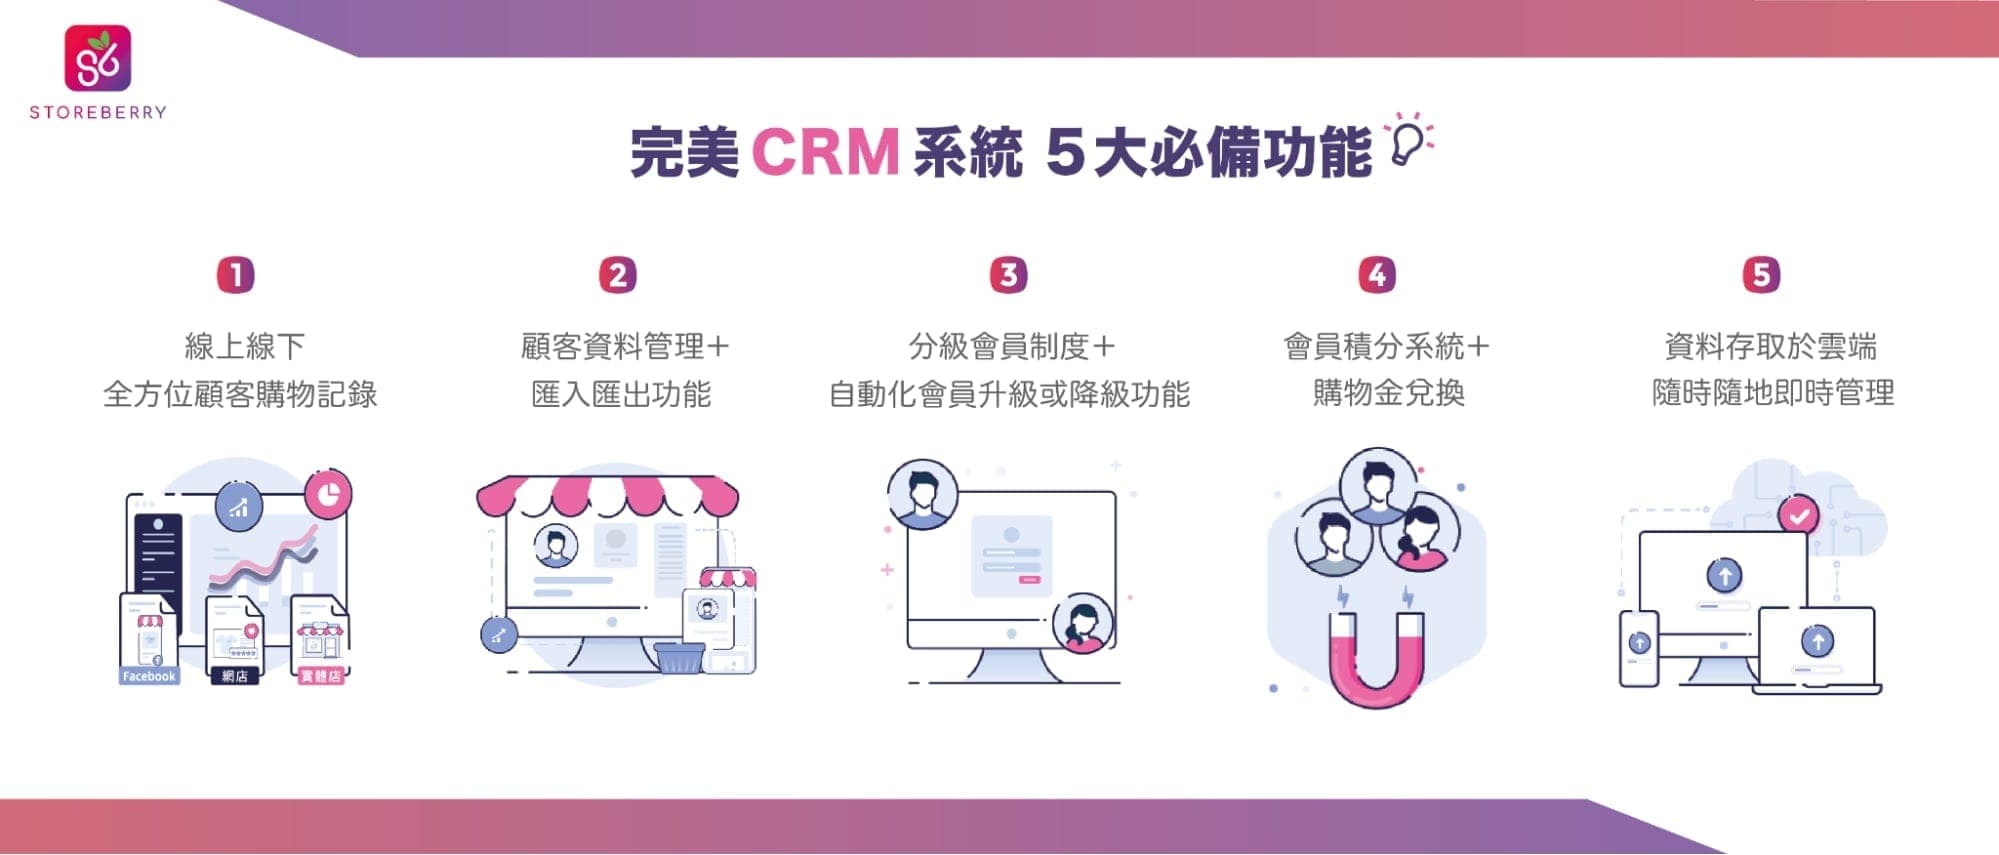 完美 CRM 系統的5大必備功能！商家及企業該如何選擇 CRM 系統?